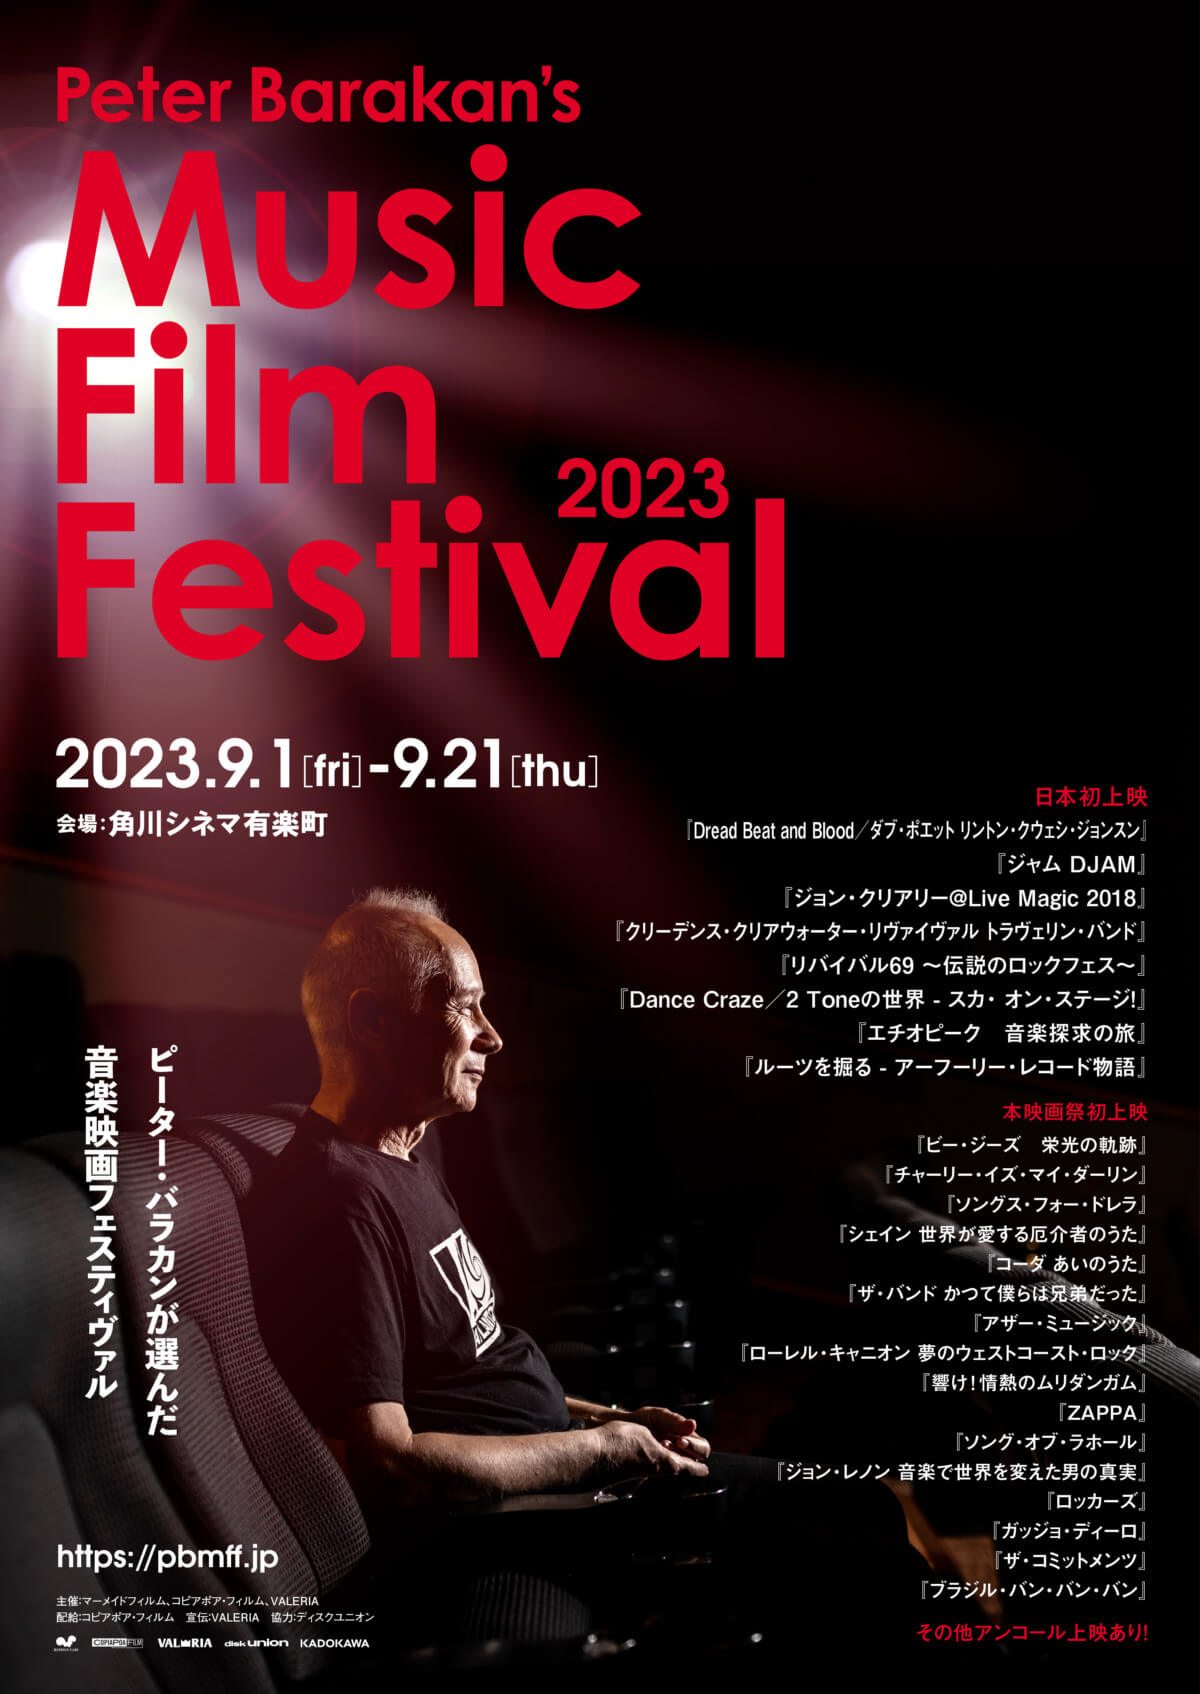 Peter Barakan's Music Film Festival 2023